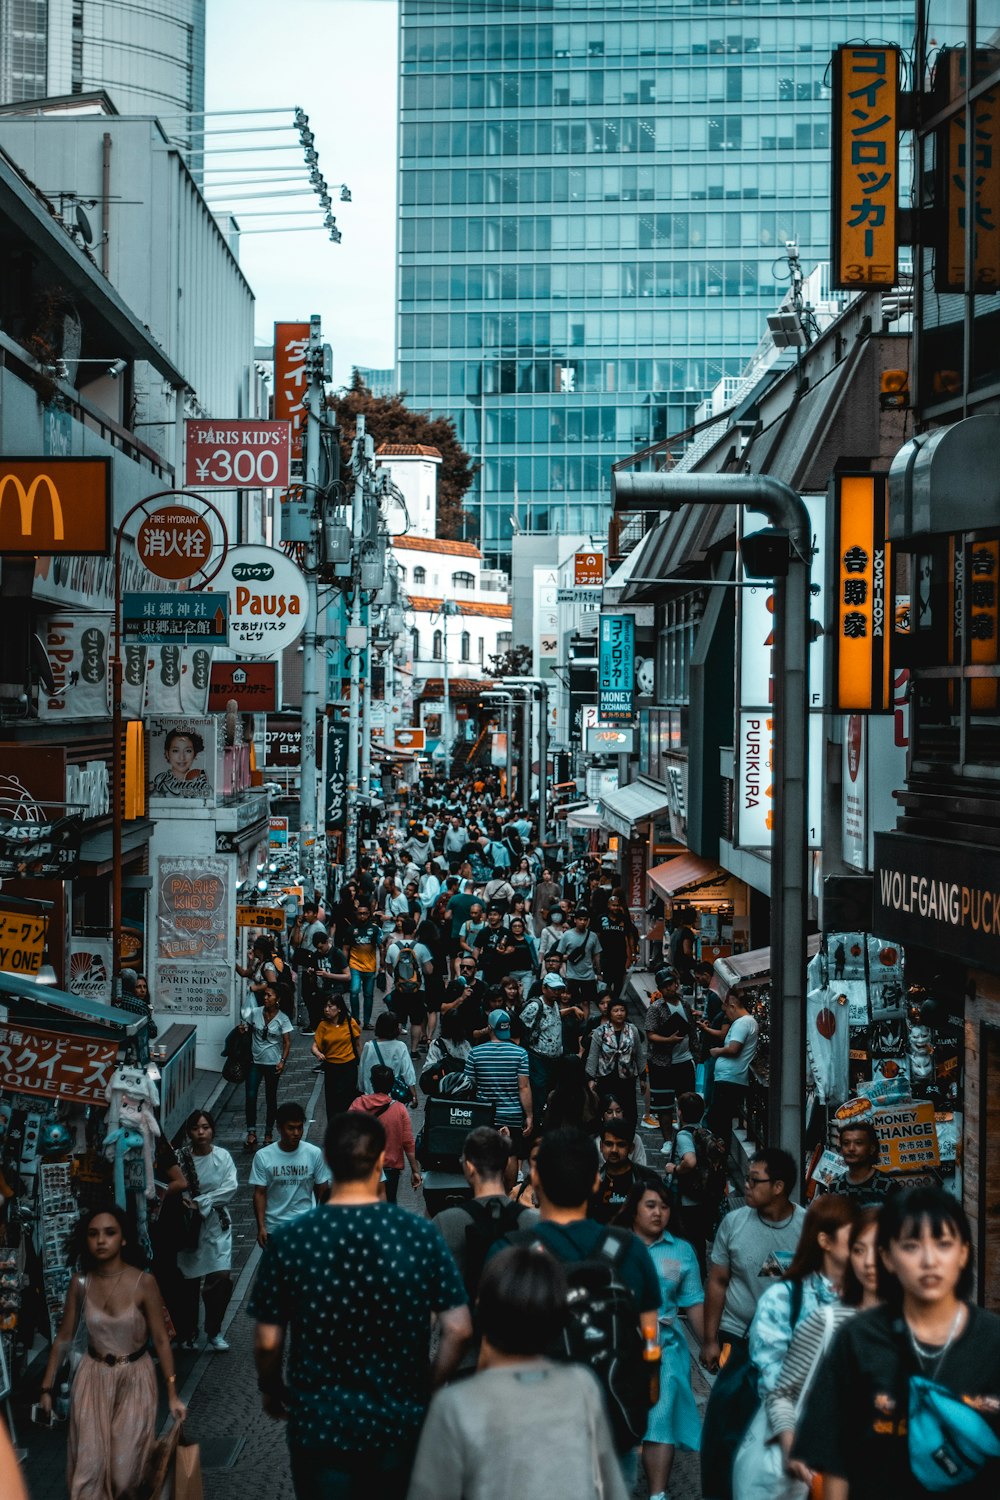 crowd walking on street during daytime